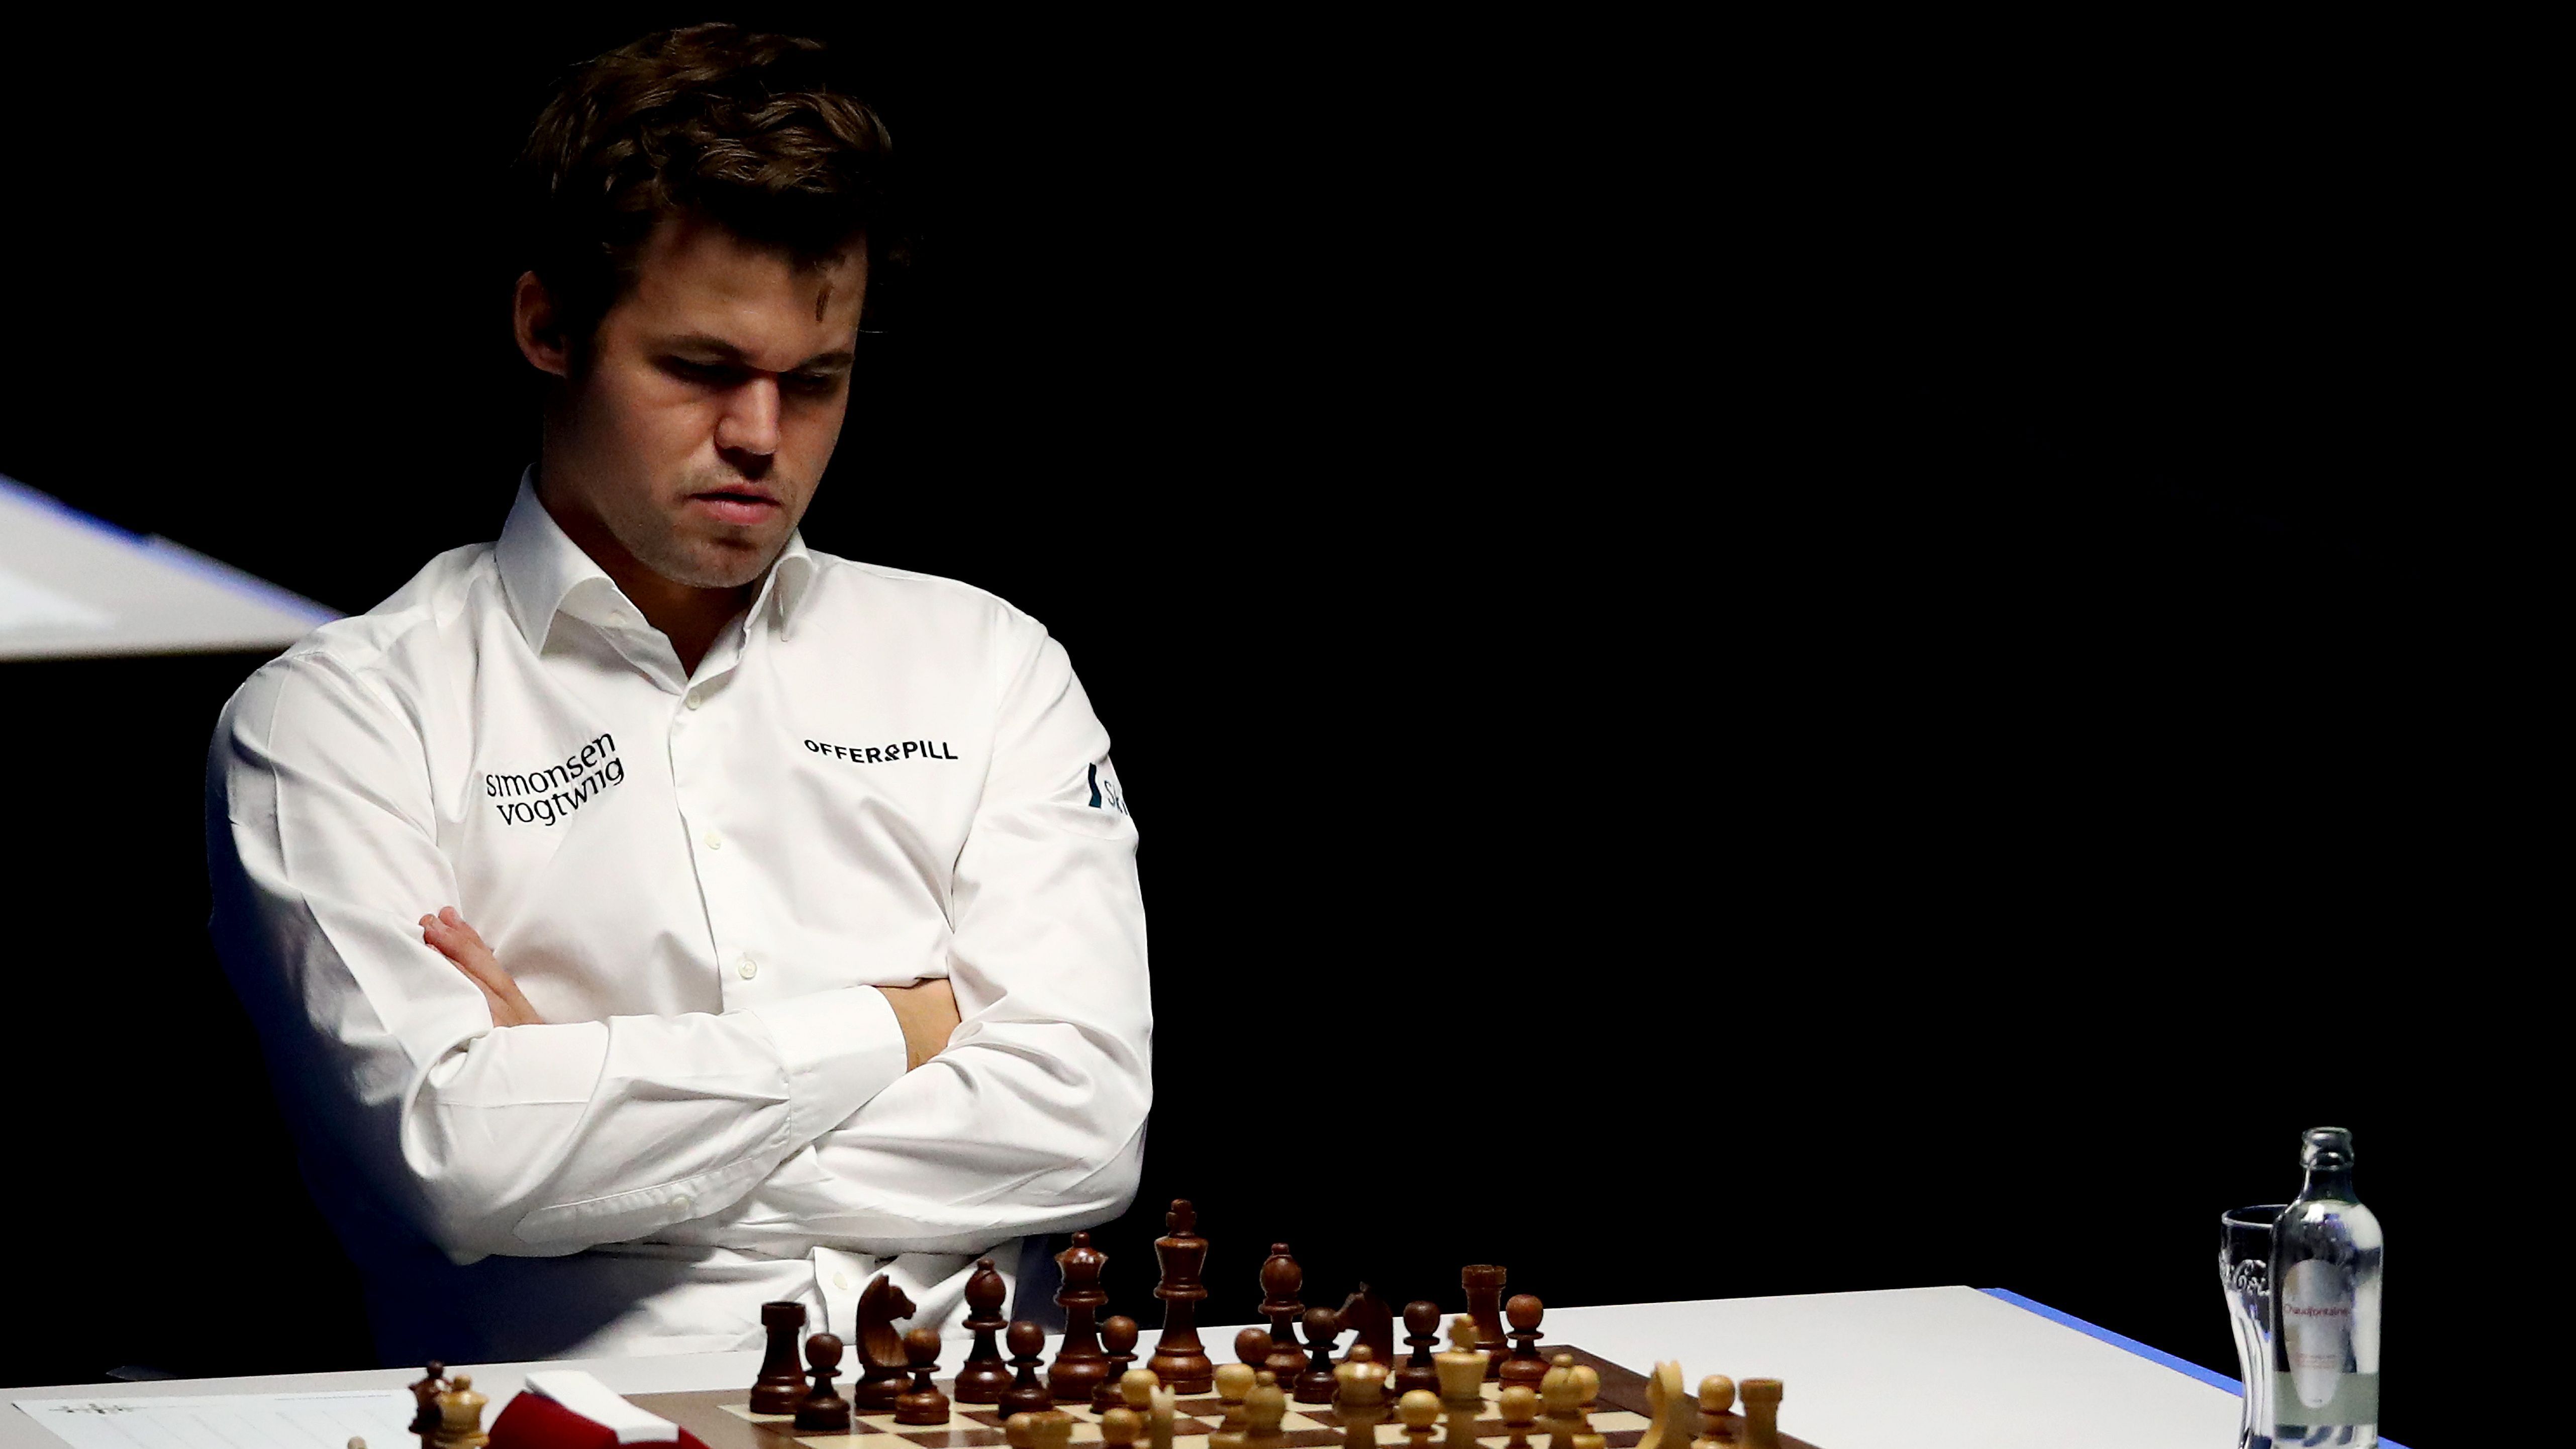 Carlsen majdnem lekéste a vb-nyitómeccset